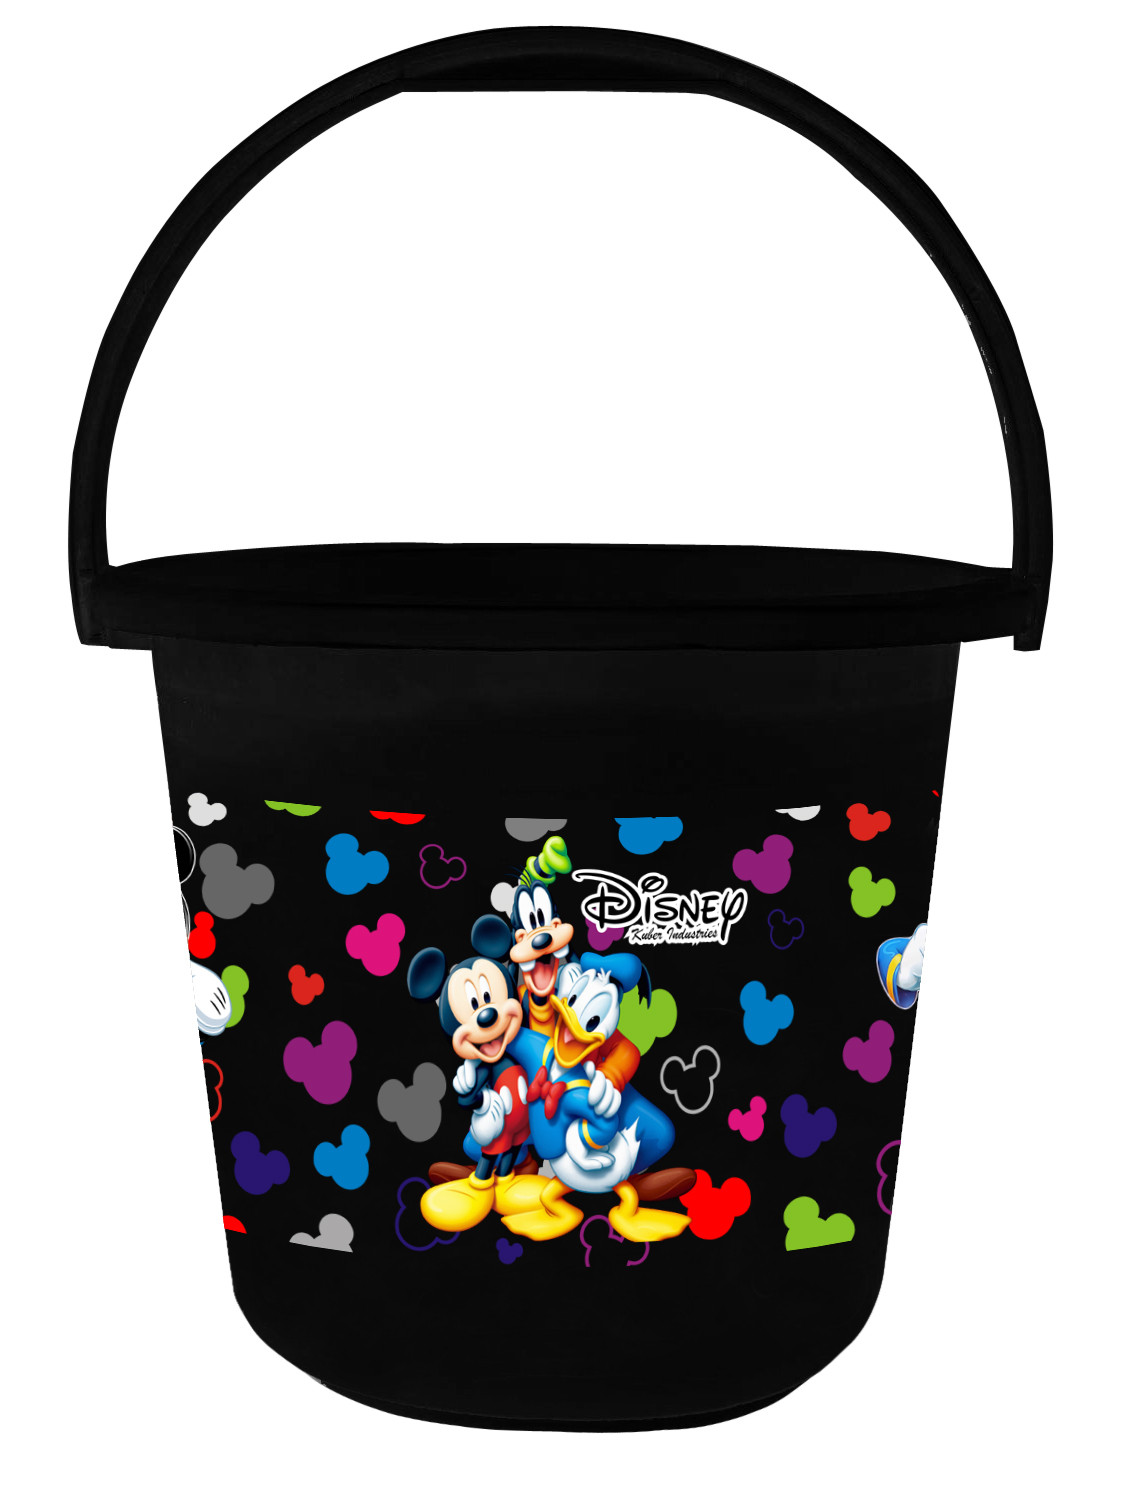 Kuber Industries Disney Team Mickey Print Unbreakable Virgin Plastic Strong Bathroom Bucket ,16 LTR (Pink & Black)-Pack of 2 -HS_35_KUBMART17411